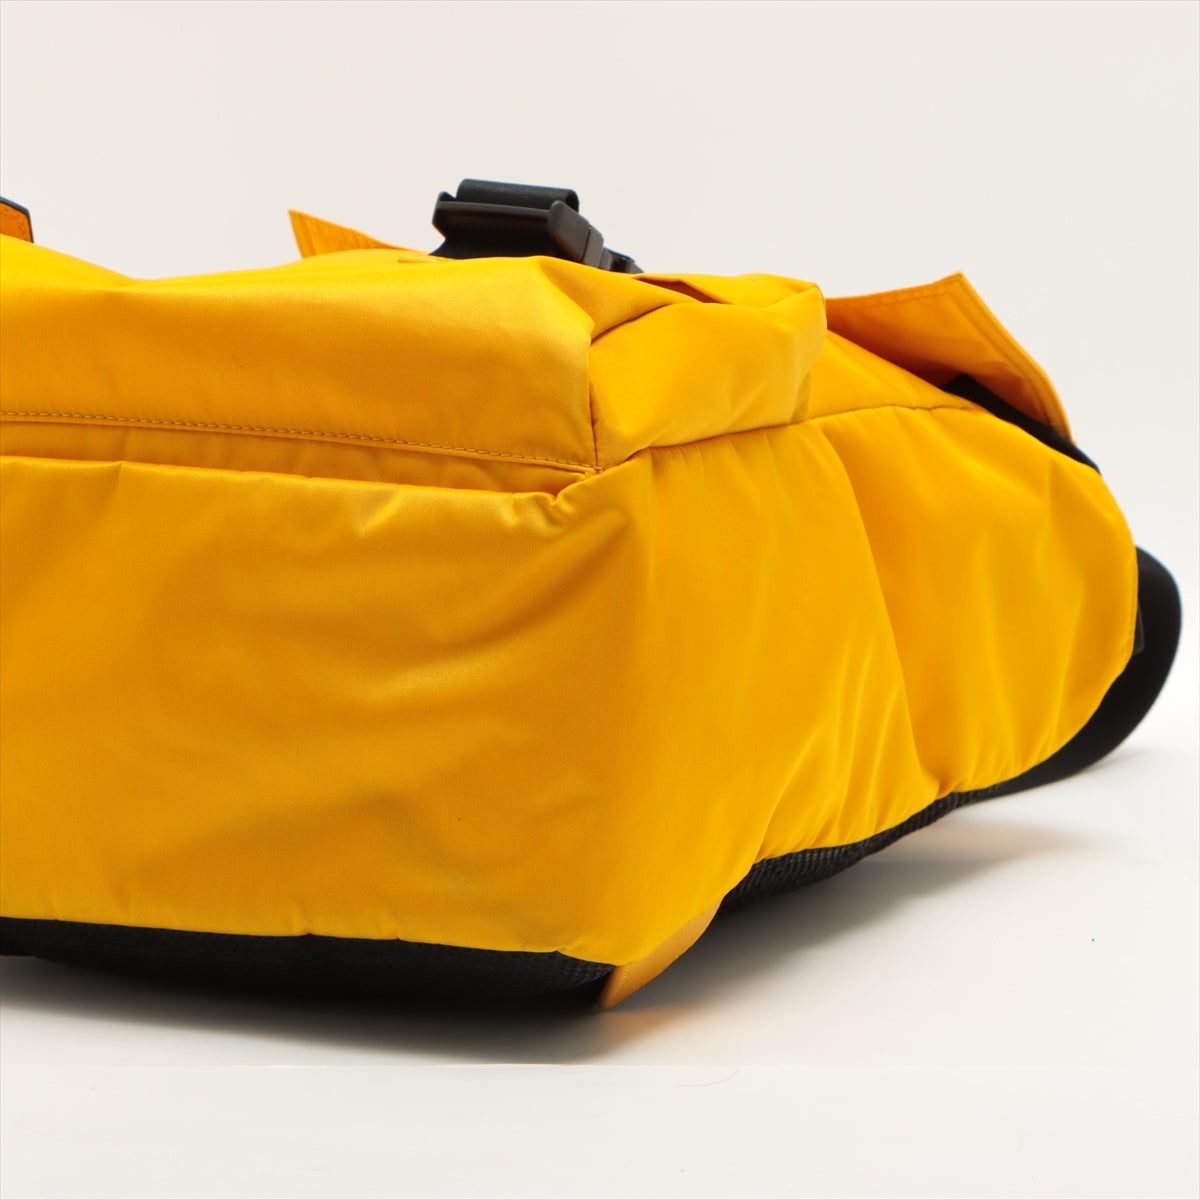 Fendi FENDINES Nylon Backpack Yellow 7VZ066